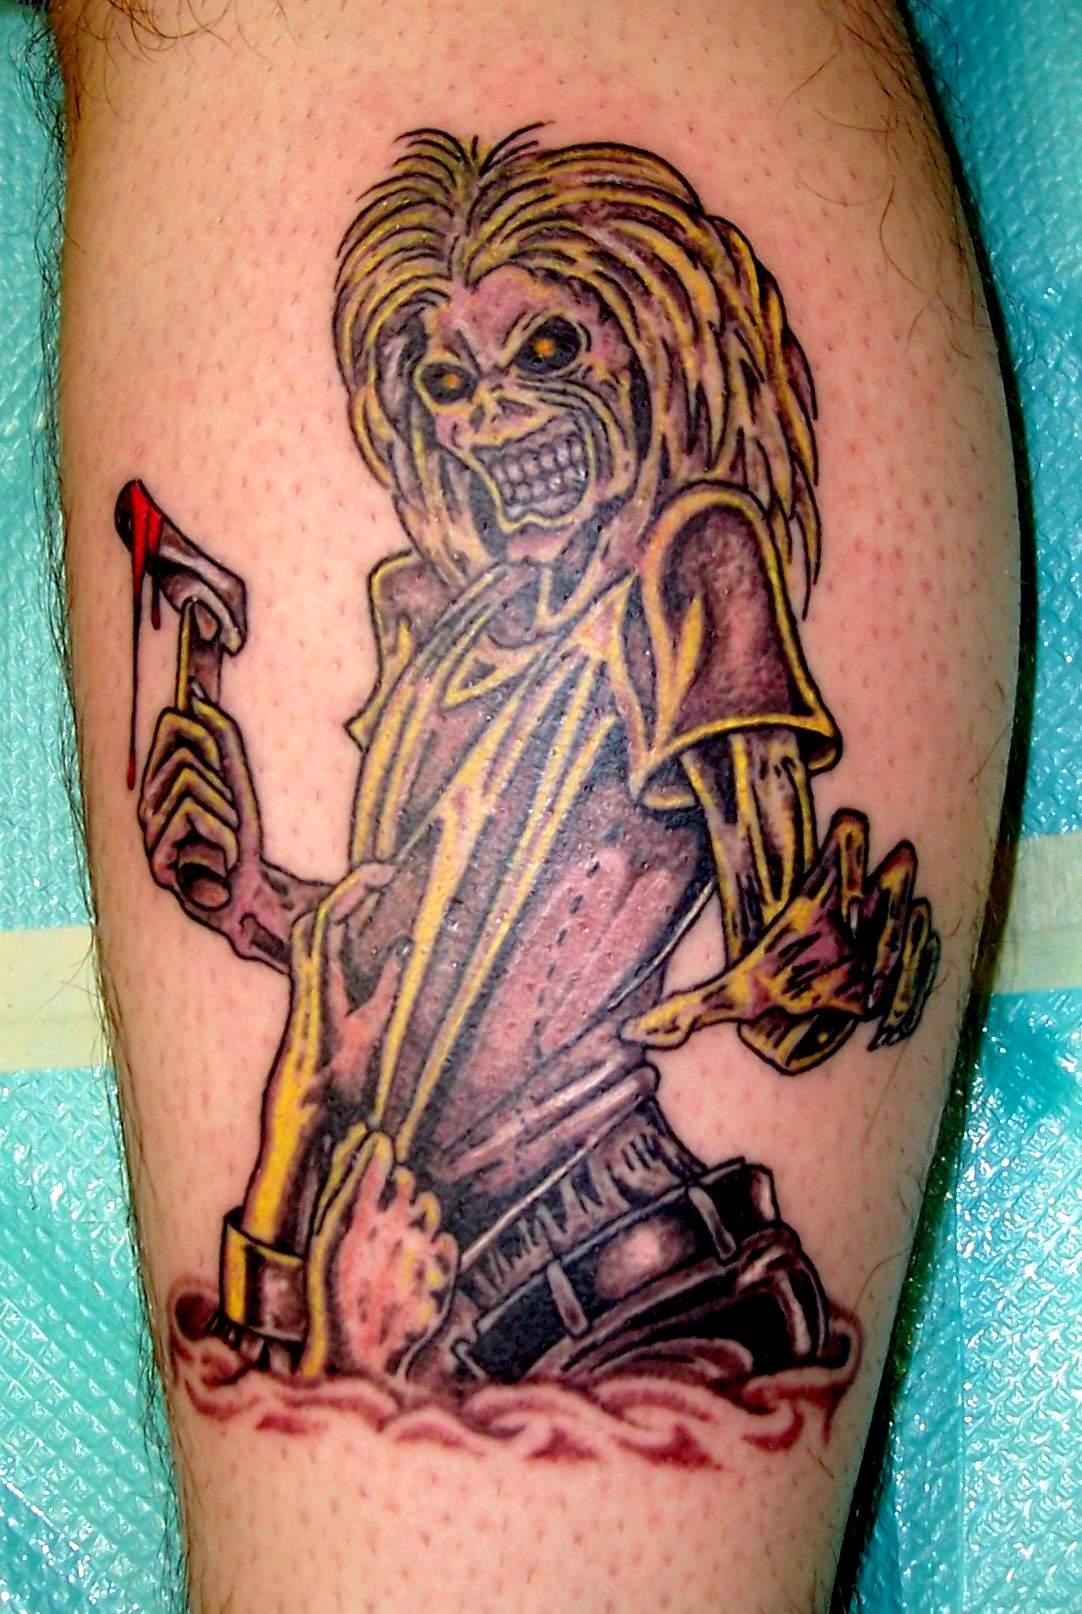 Iron Maiden Tattoos